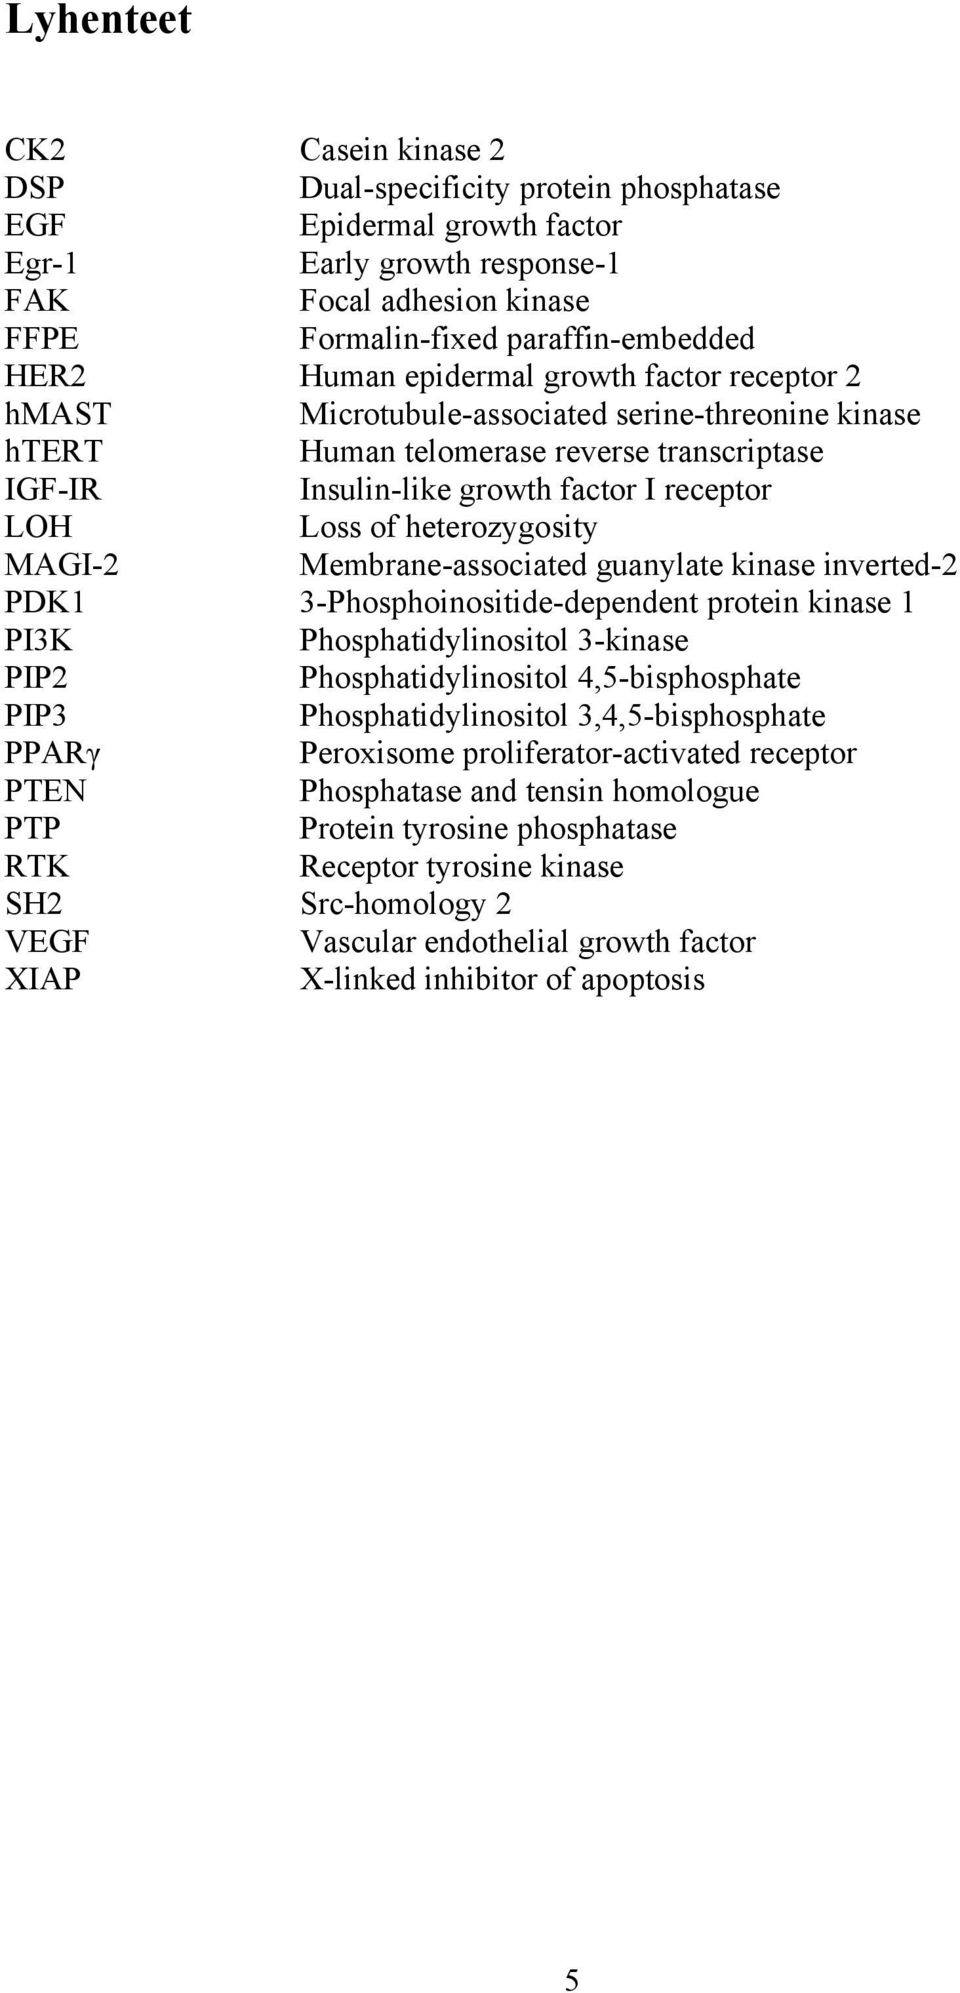 heterozygosity MAGI-2 Membrane-associated guanylate kinase inverted-2 PDK1 3-Phosphoinositide-dependent protein kinase 1 PI3K Phosphatidylinositol 3-kinase PIP2 Phosphatidylinositol 4,5-bisphosphate